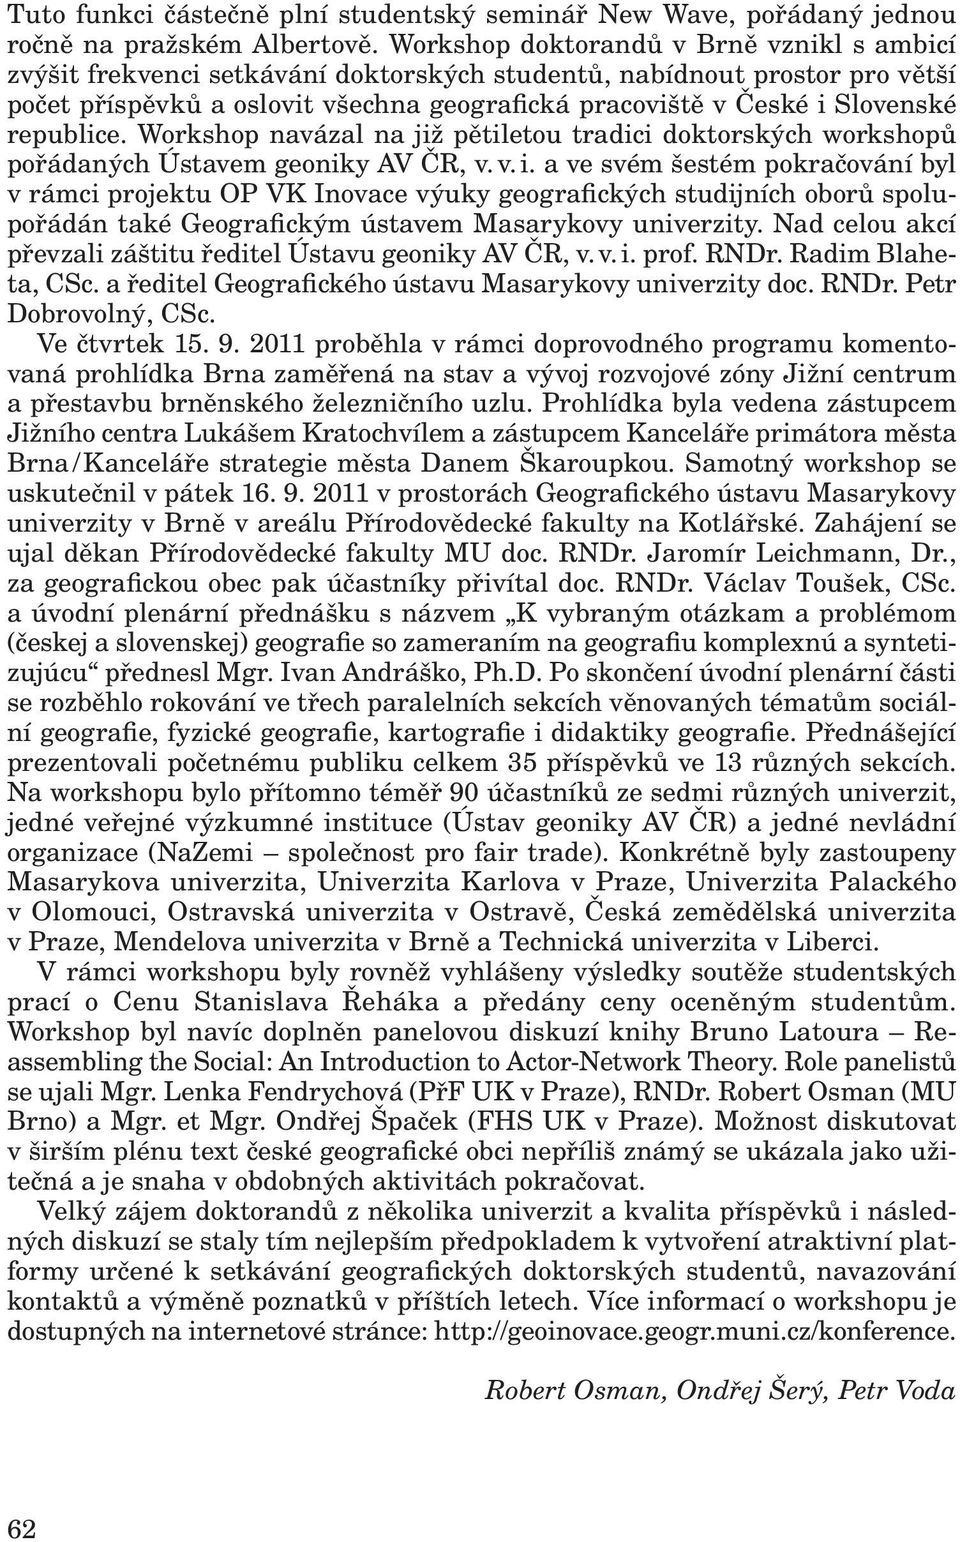 republice. Workshop navázal na již pětiletou tradici doktorských workshopů pořádaných Ústavem geoniky AV ČR, v. v. i.